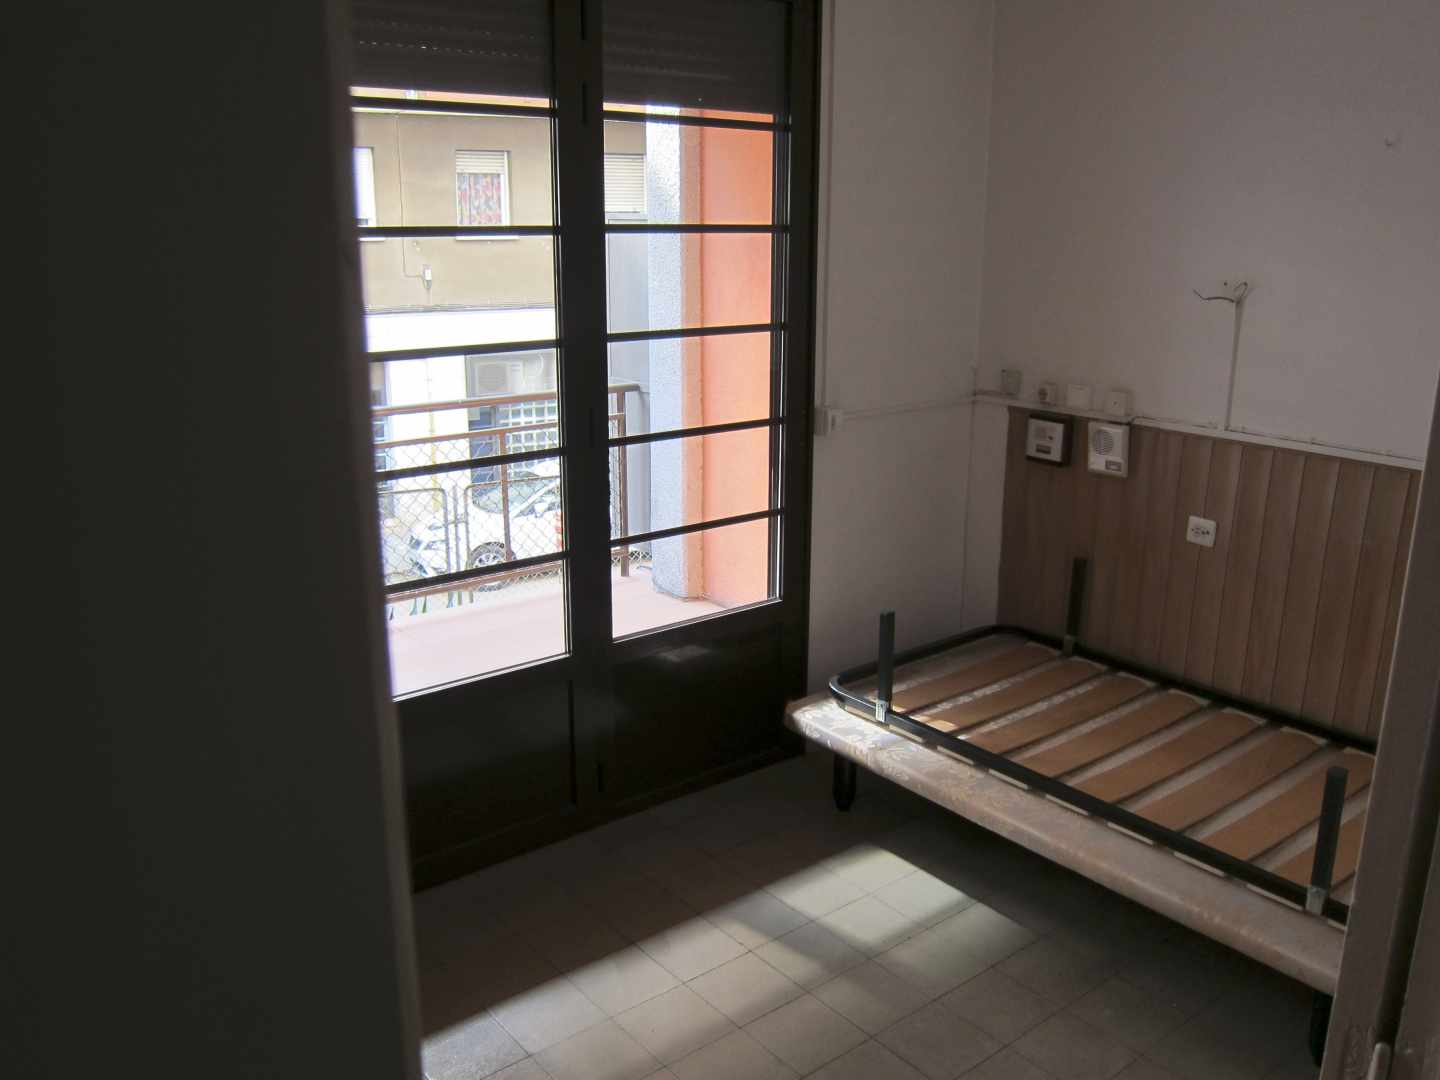 Habitación de un piso vacío, en Barcelona.